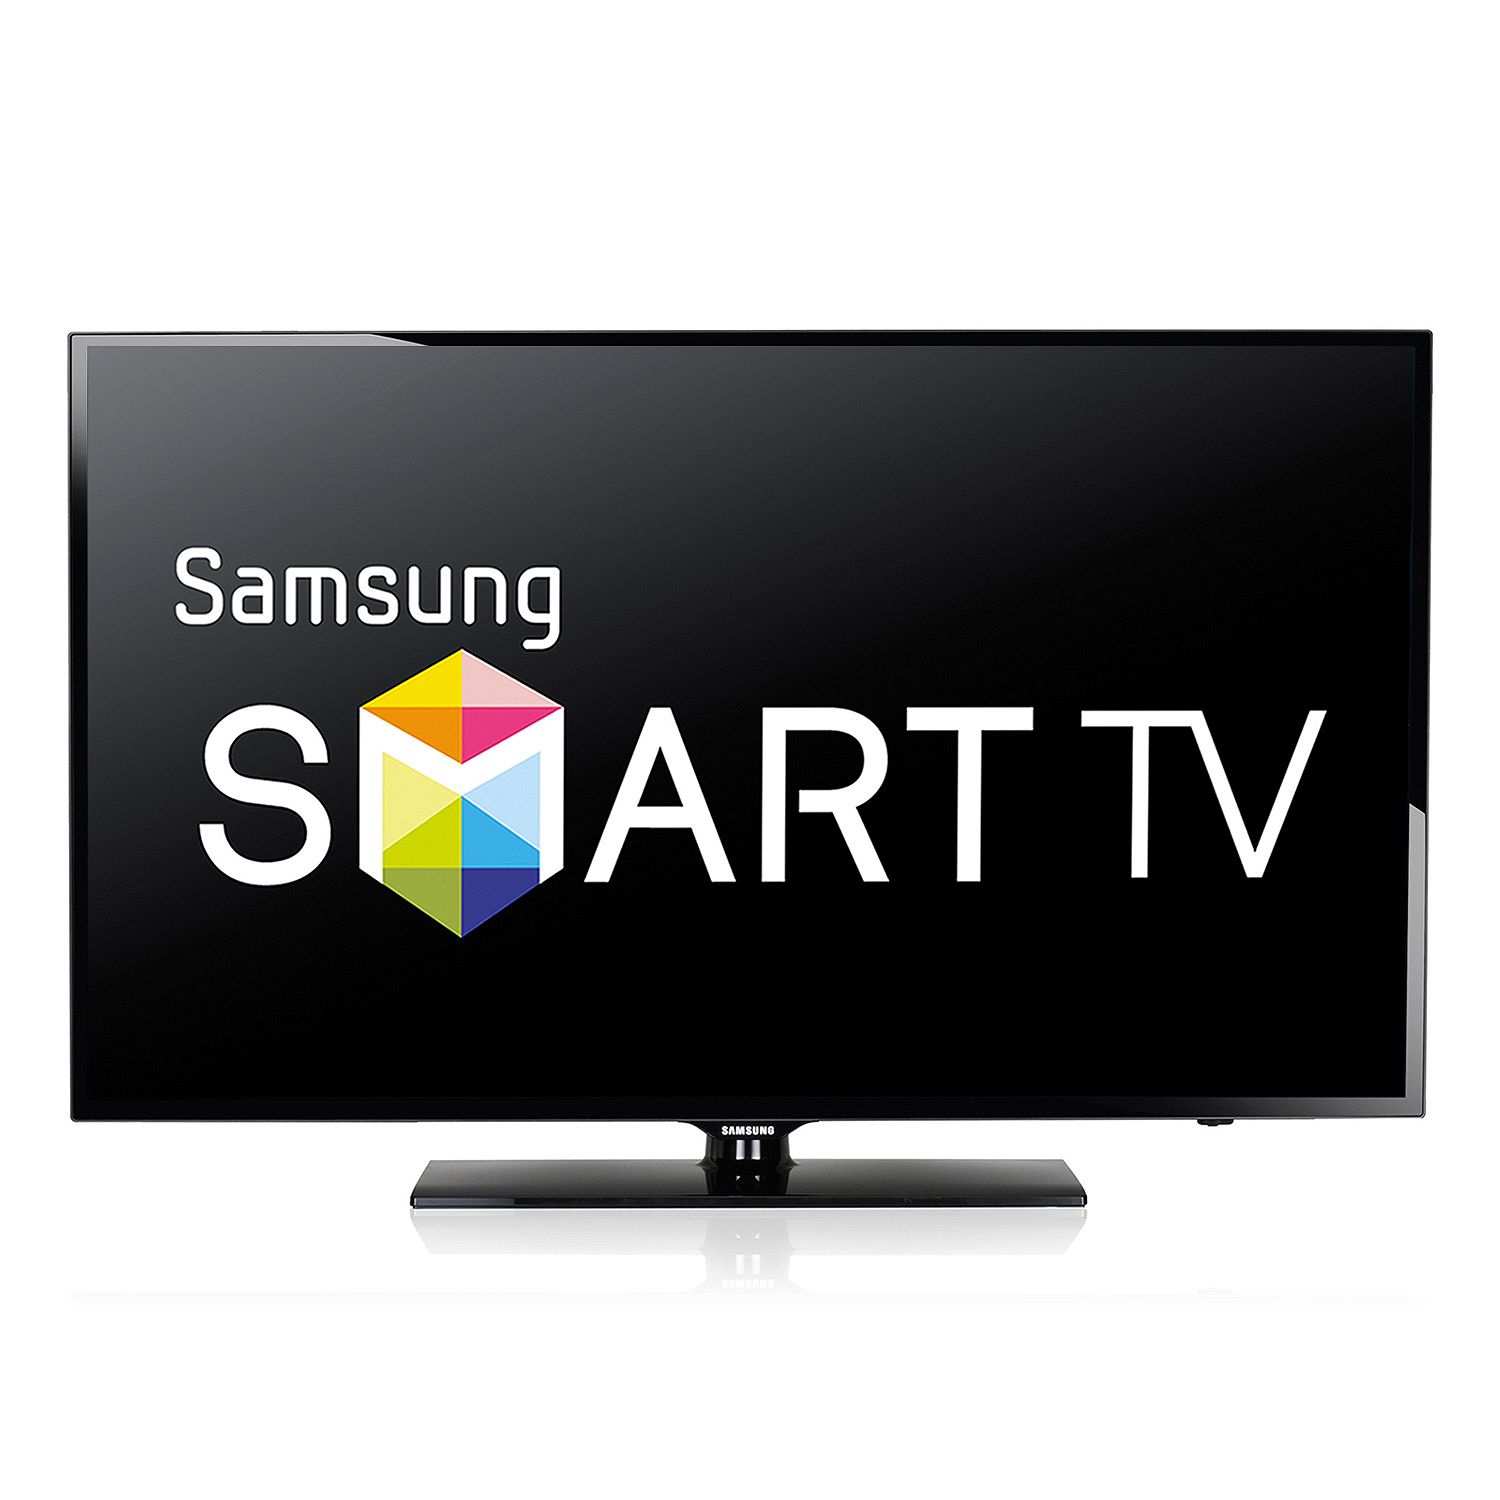 Купить телевизор со смарт тв в москве. Смарт ТВ Samsung. Телевизор Samsung Smart TV. Самсунг смарт ТВ 32. Led телевизор Samsung смарт.